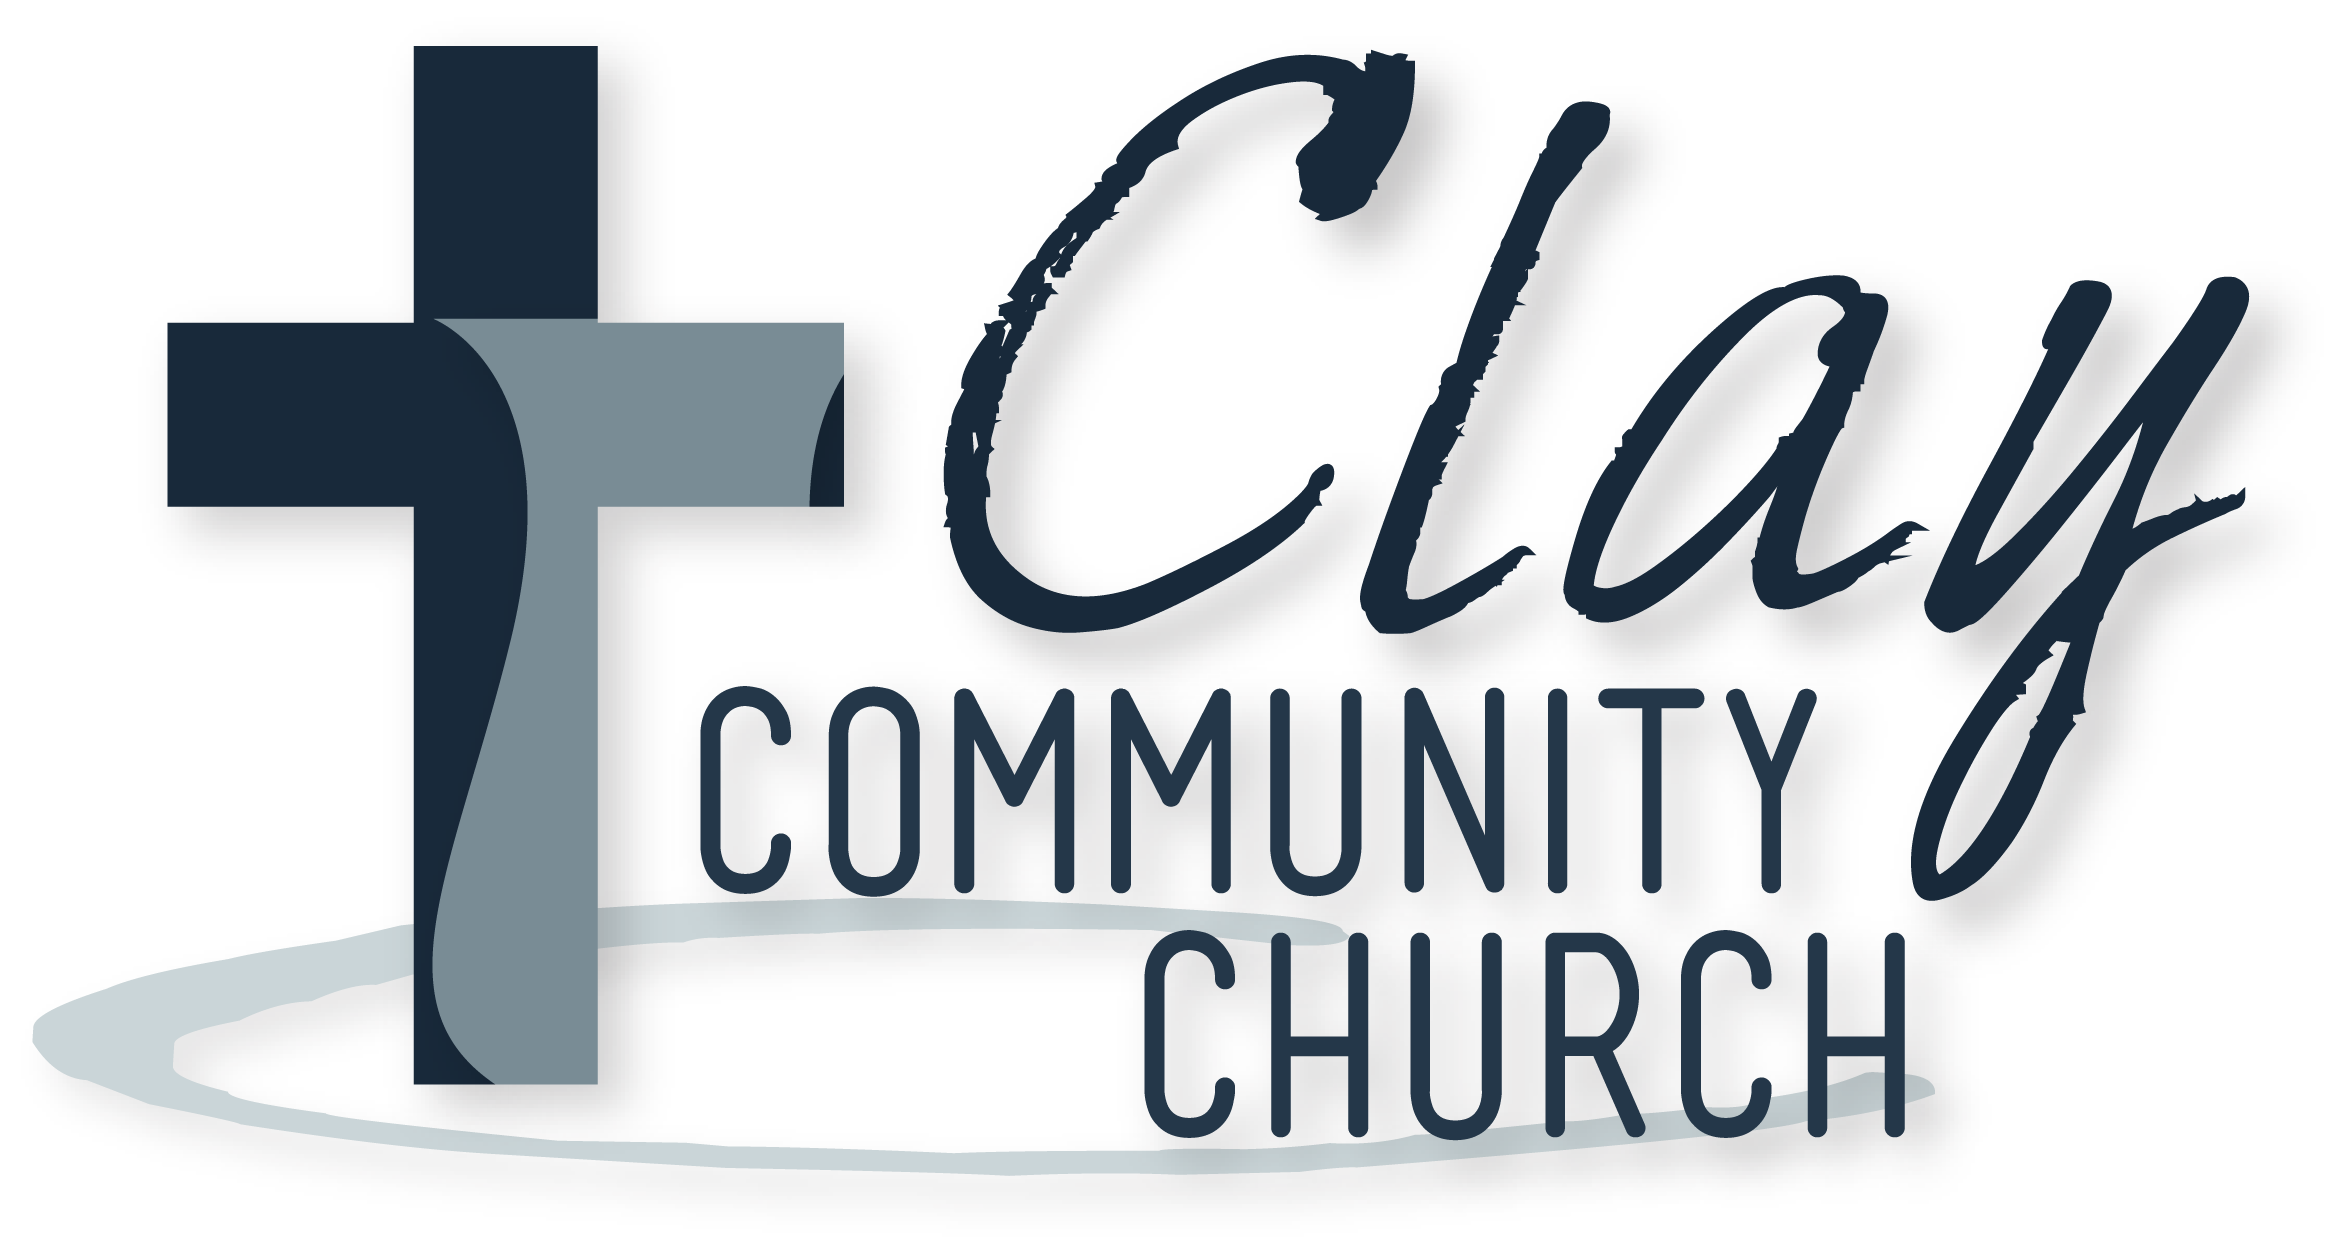 Clay Community Church